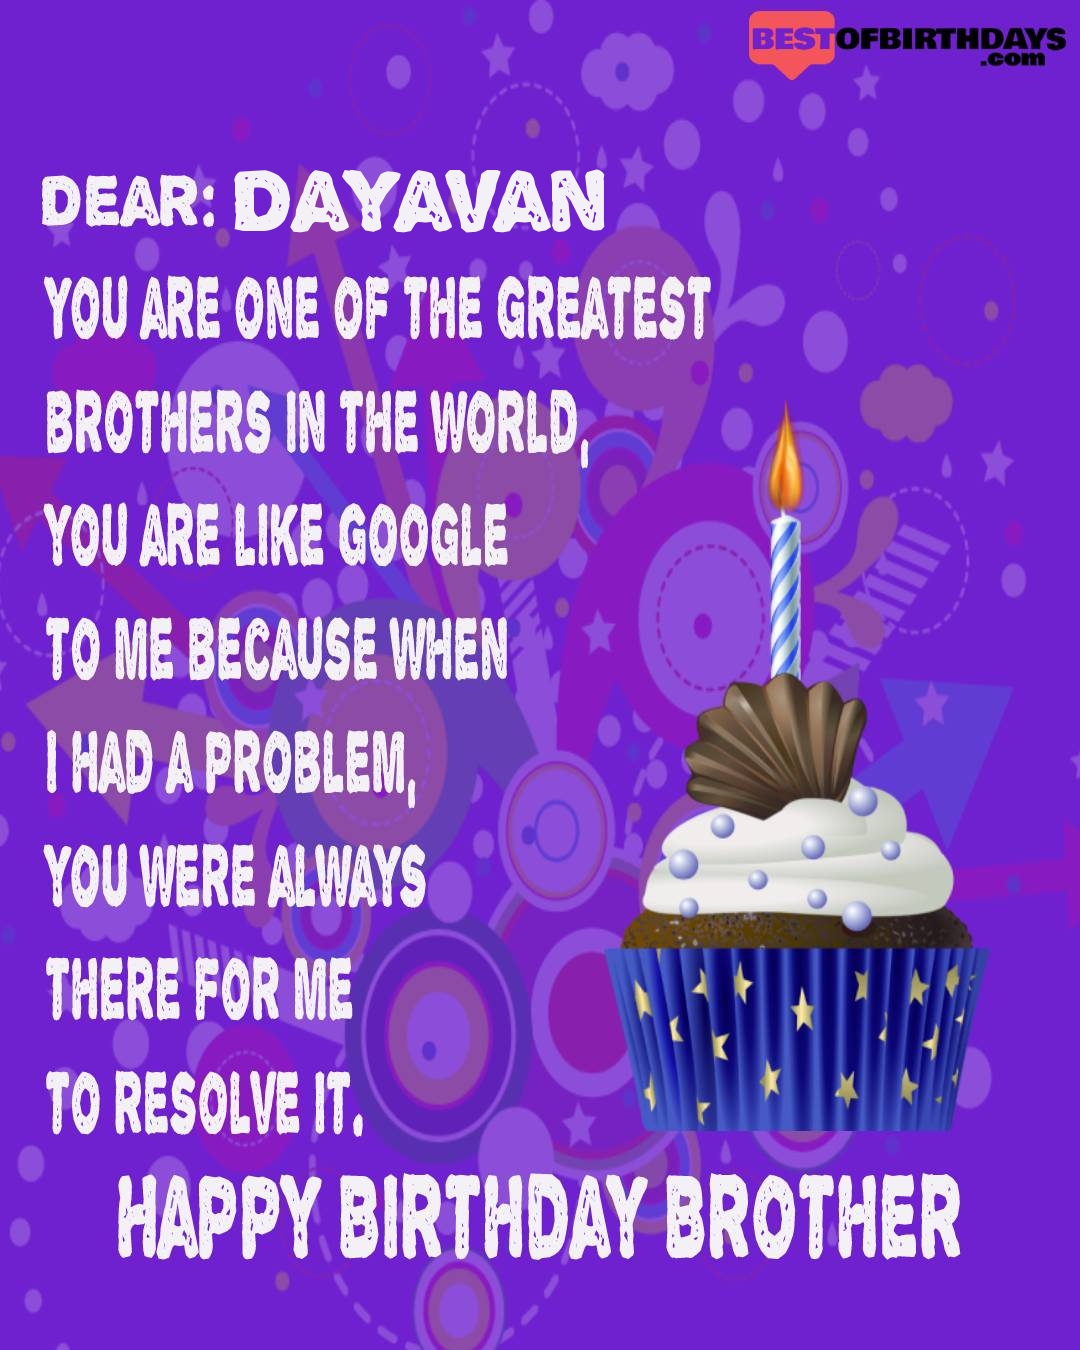 Happy birthday dayavan bhai brother bro